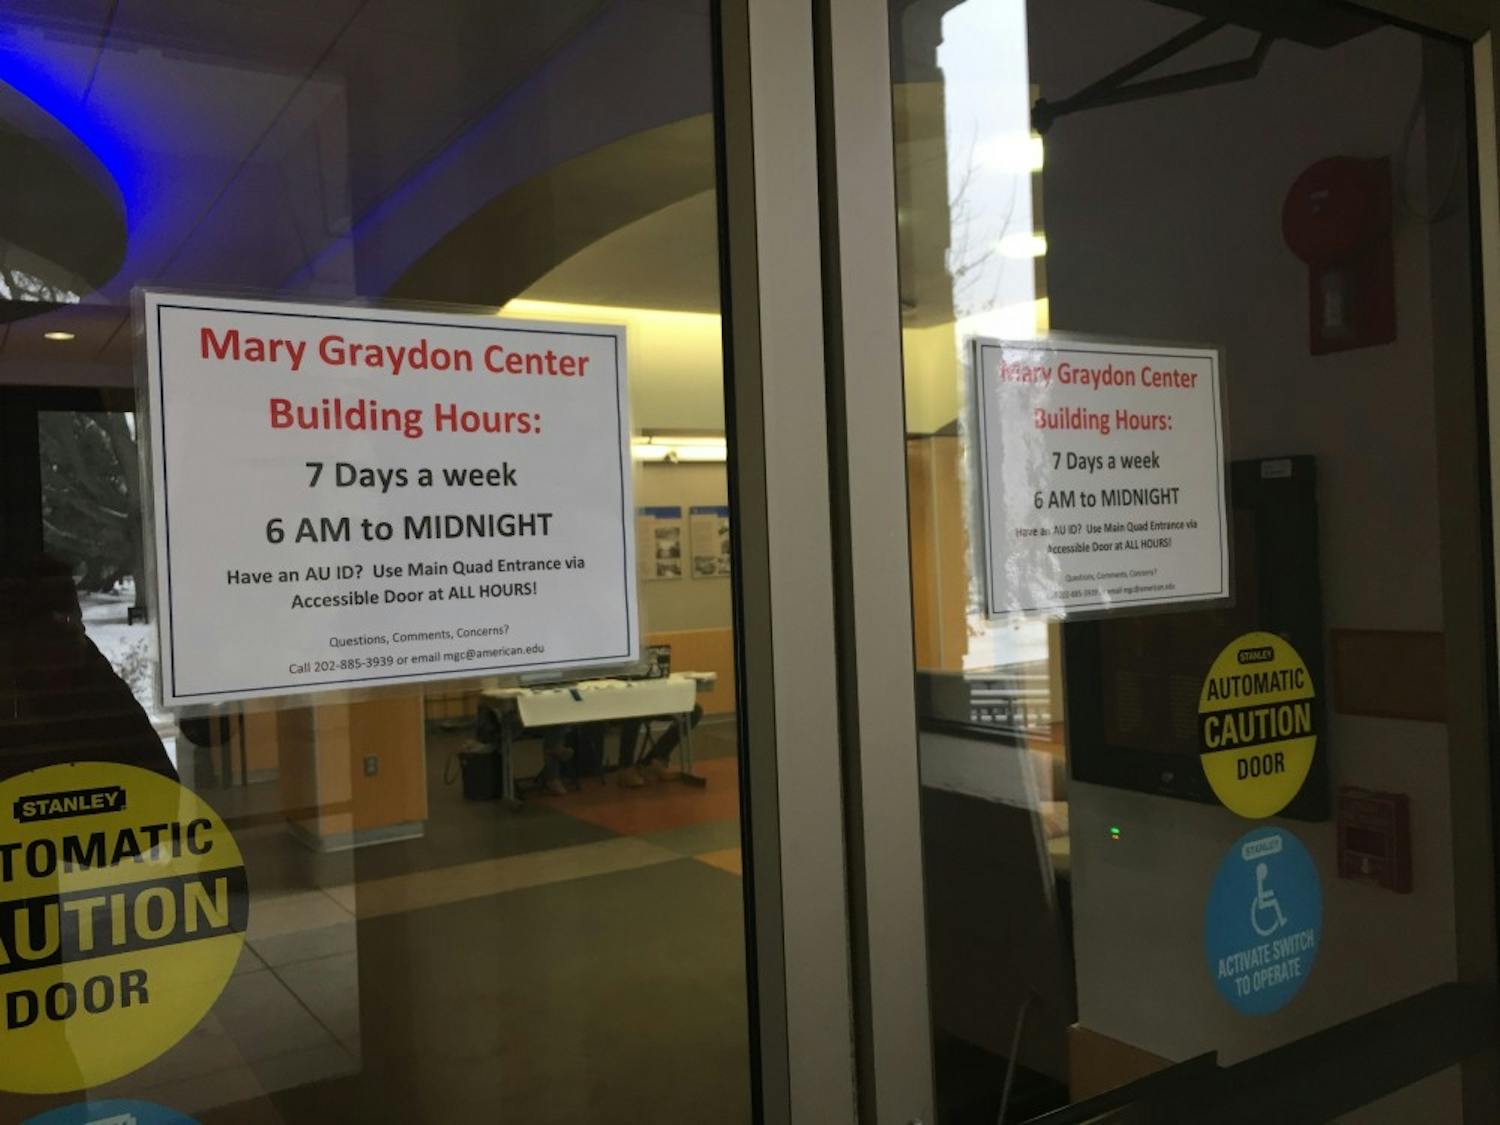 Mary Graydon Center hours